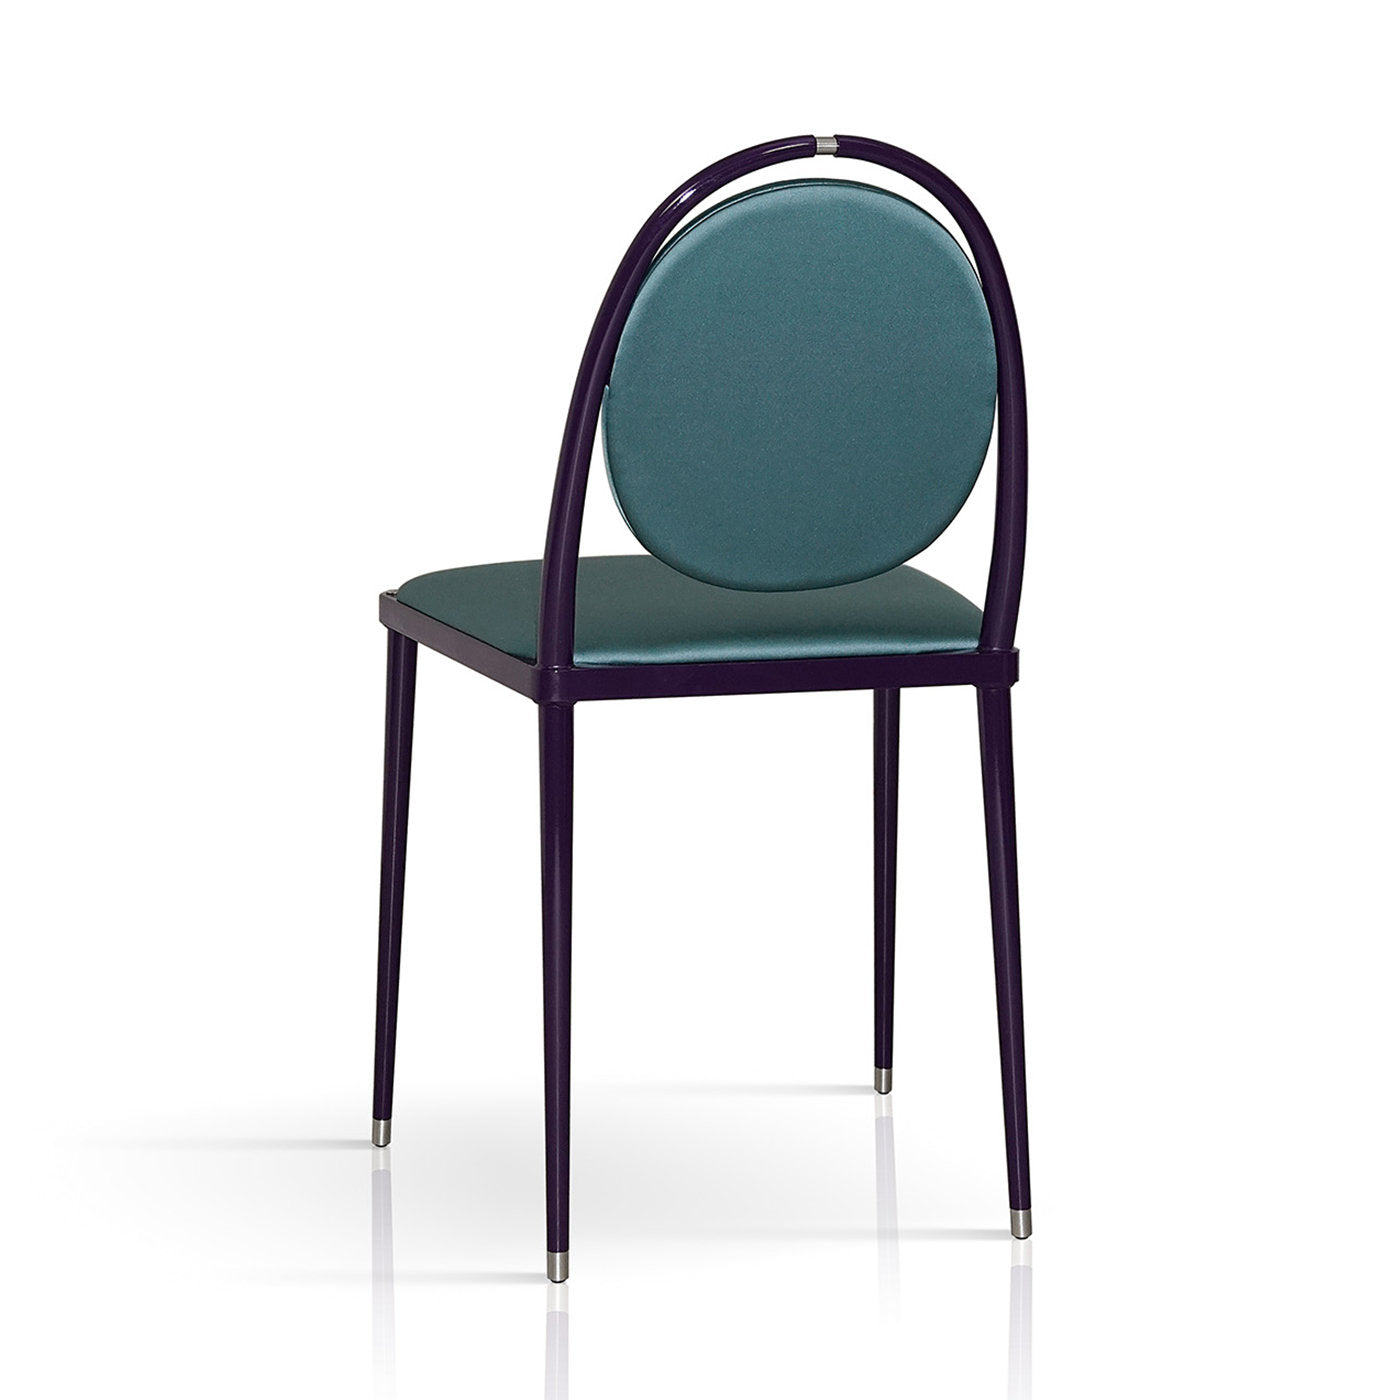 Balzaretti Teal Blue Chair - Alternative view 2